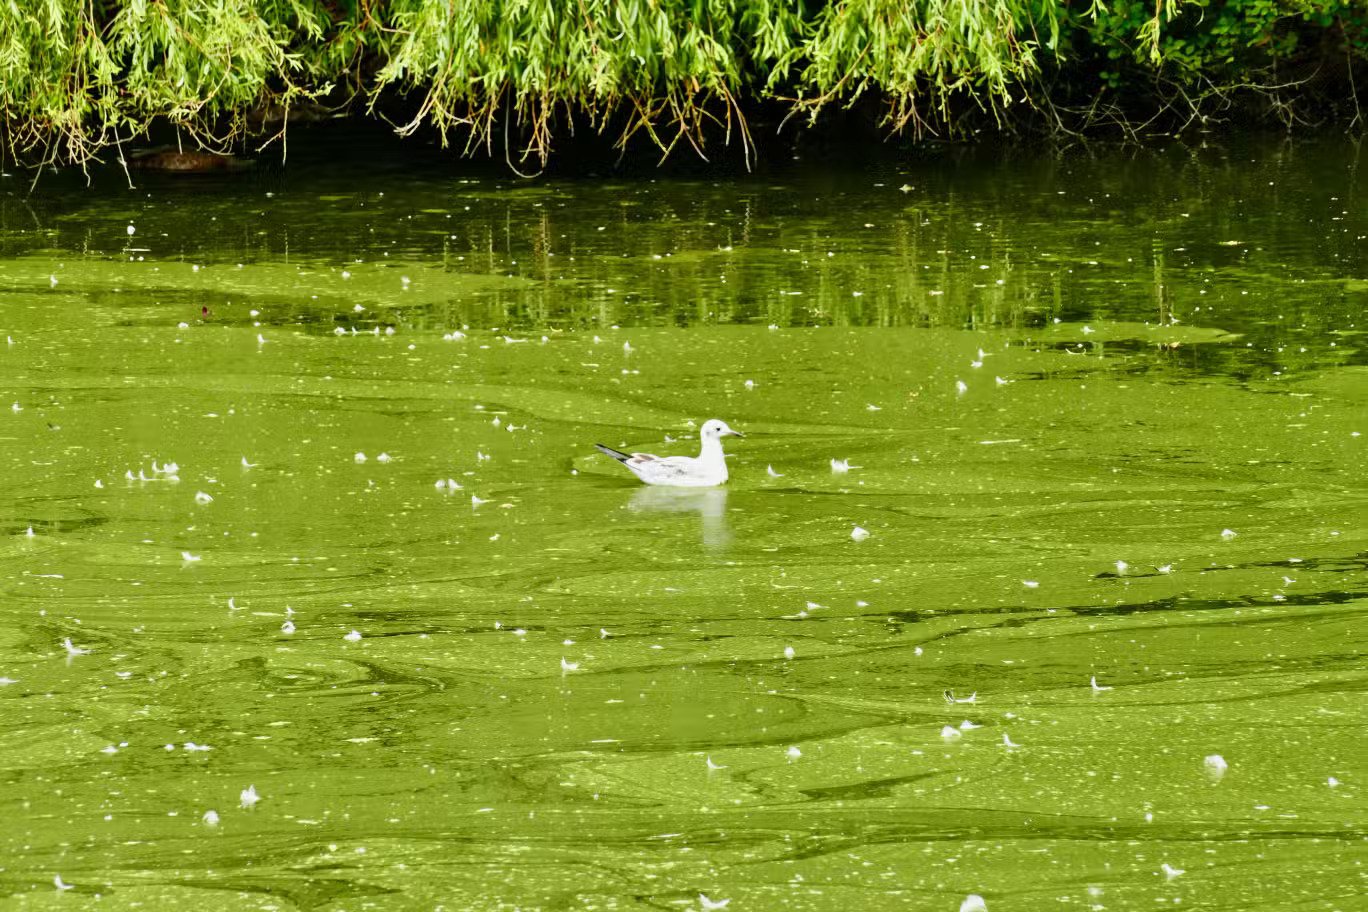 اصطبغت بحيرة في ريدينغ، بيركشاير، باللون الأخضر مع انتشار الطحالب 